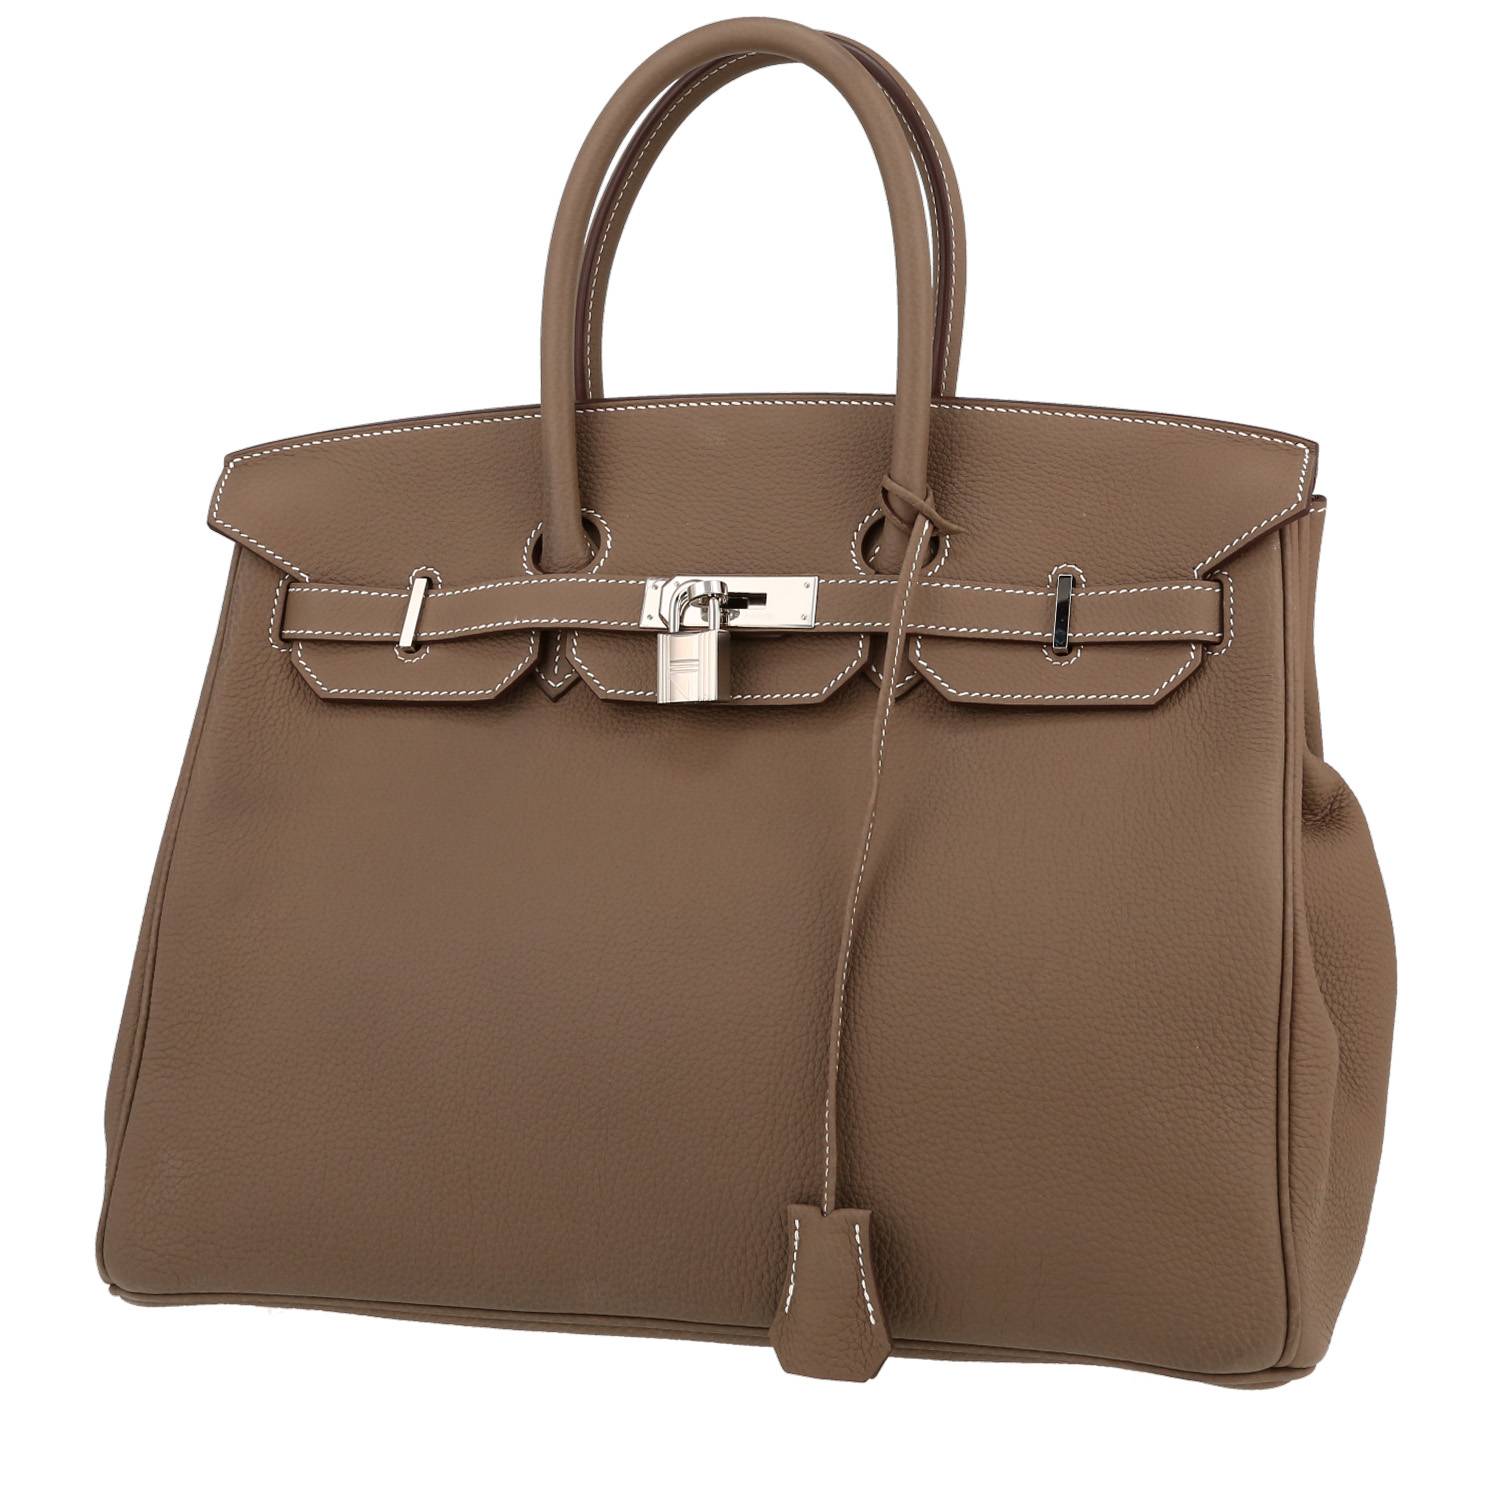 Birkin 35 cm Handbag In Etoupe Togo Leather